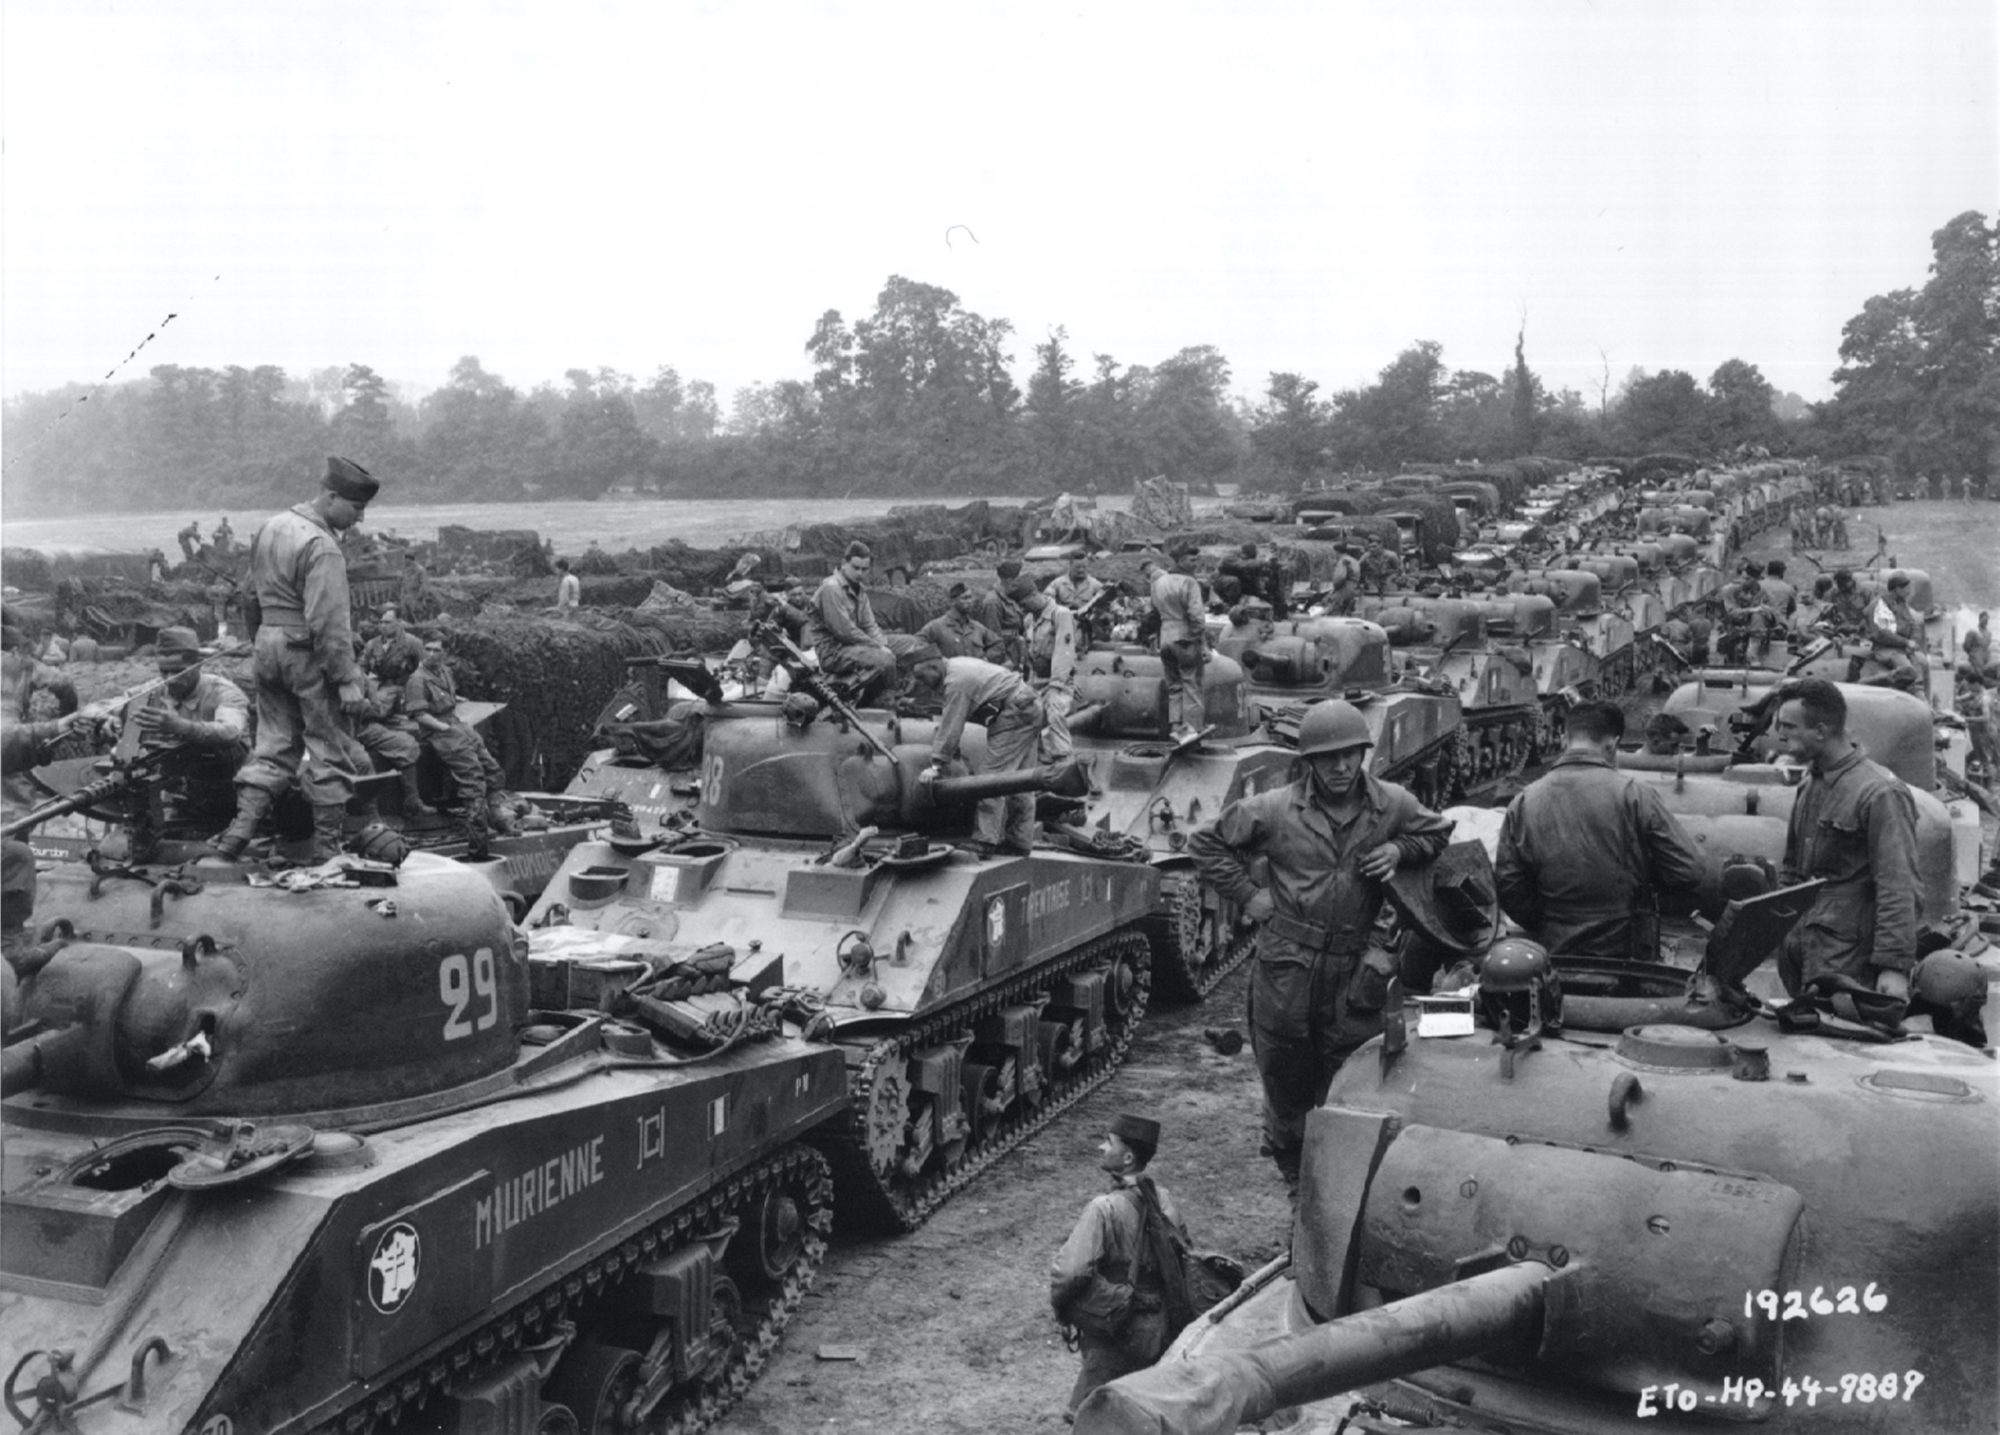 Tanks in World War II